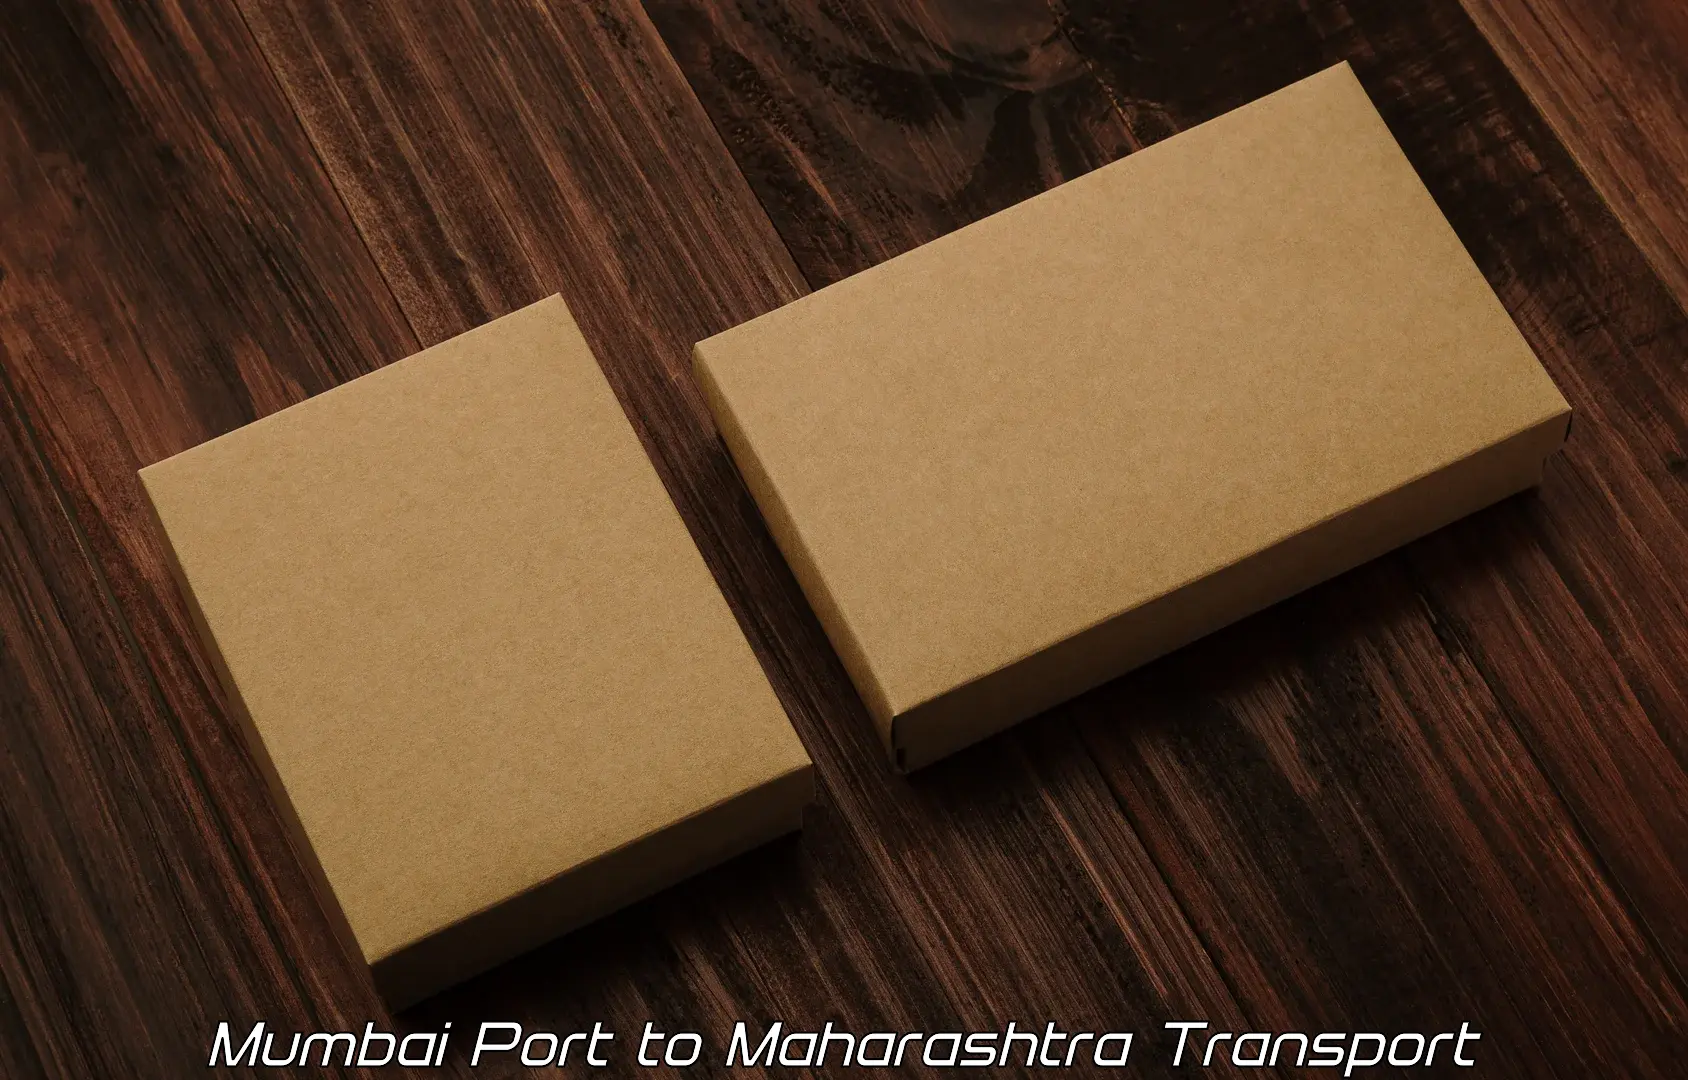 Goods delivery service Mumbai Port to Tata Institute of Social Sciences Mumbai